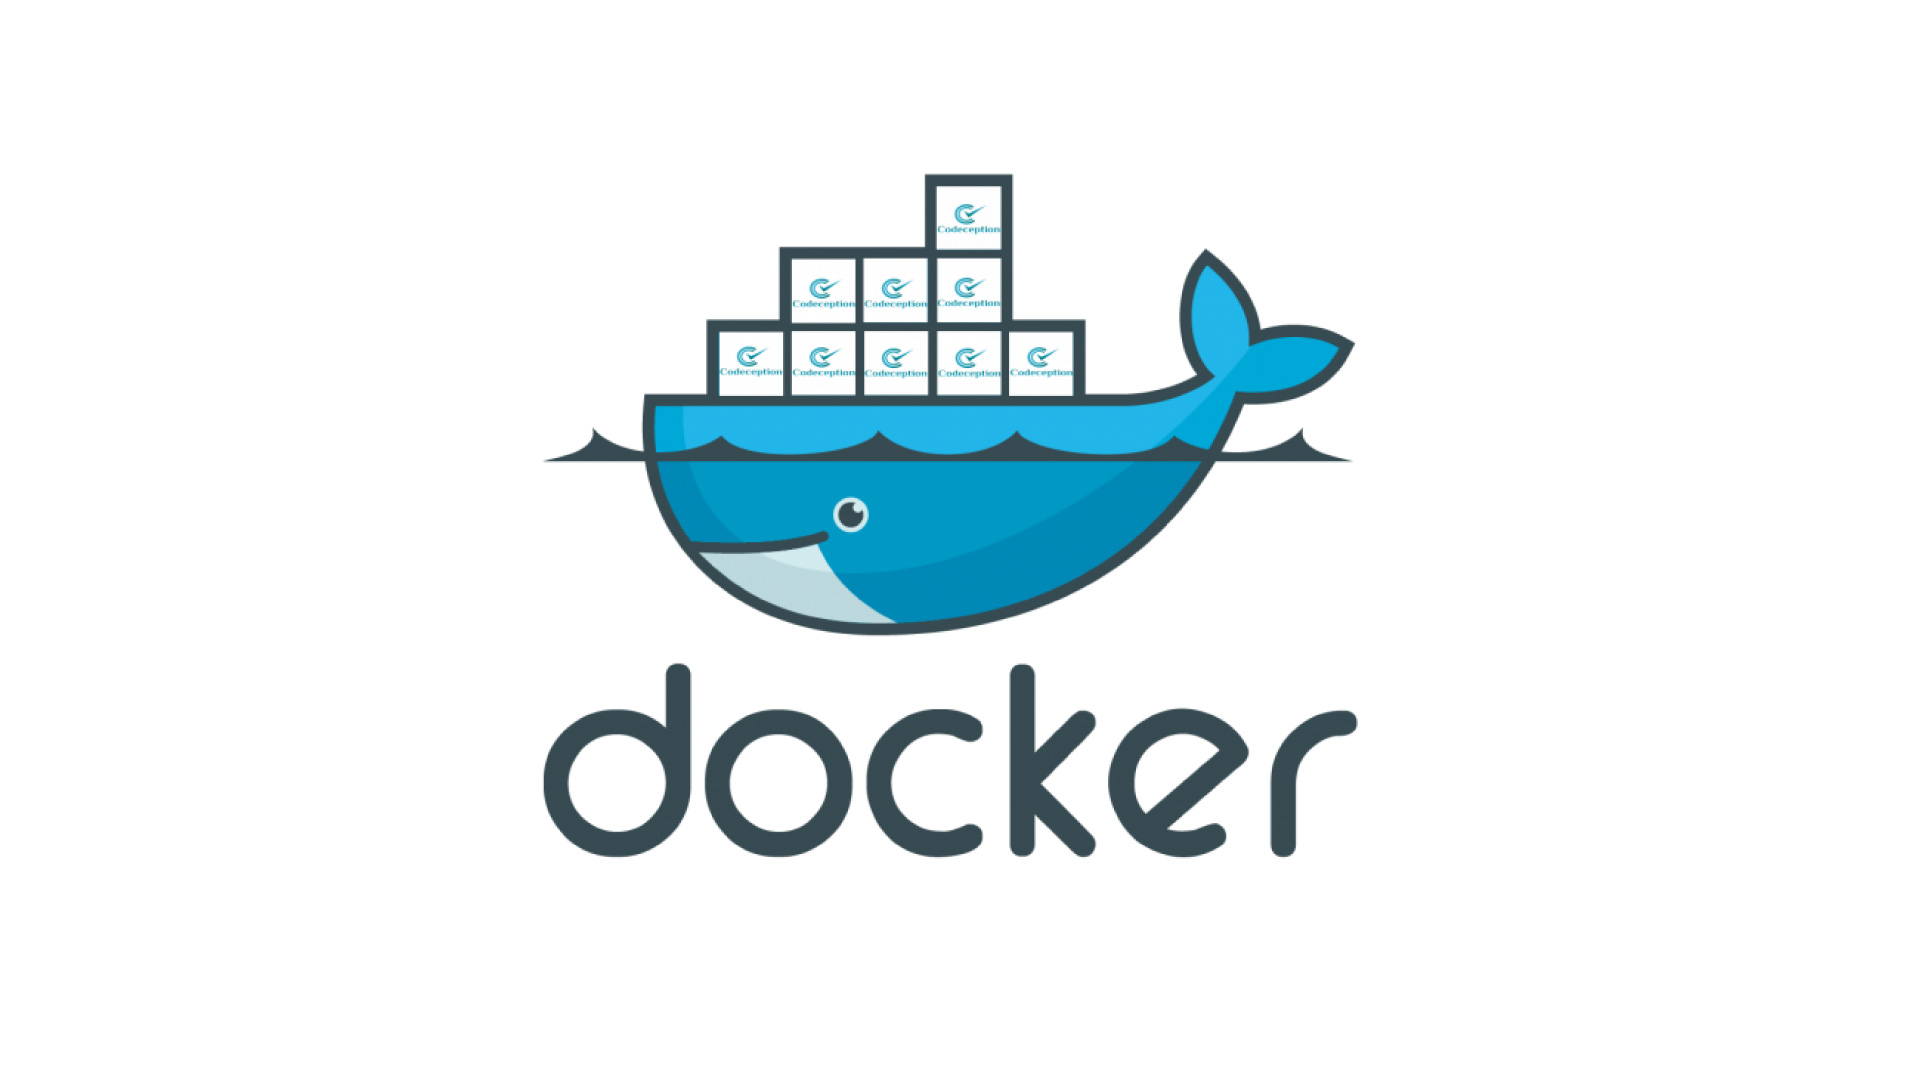 Ce este Docker?